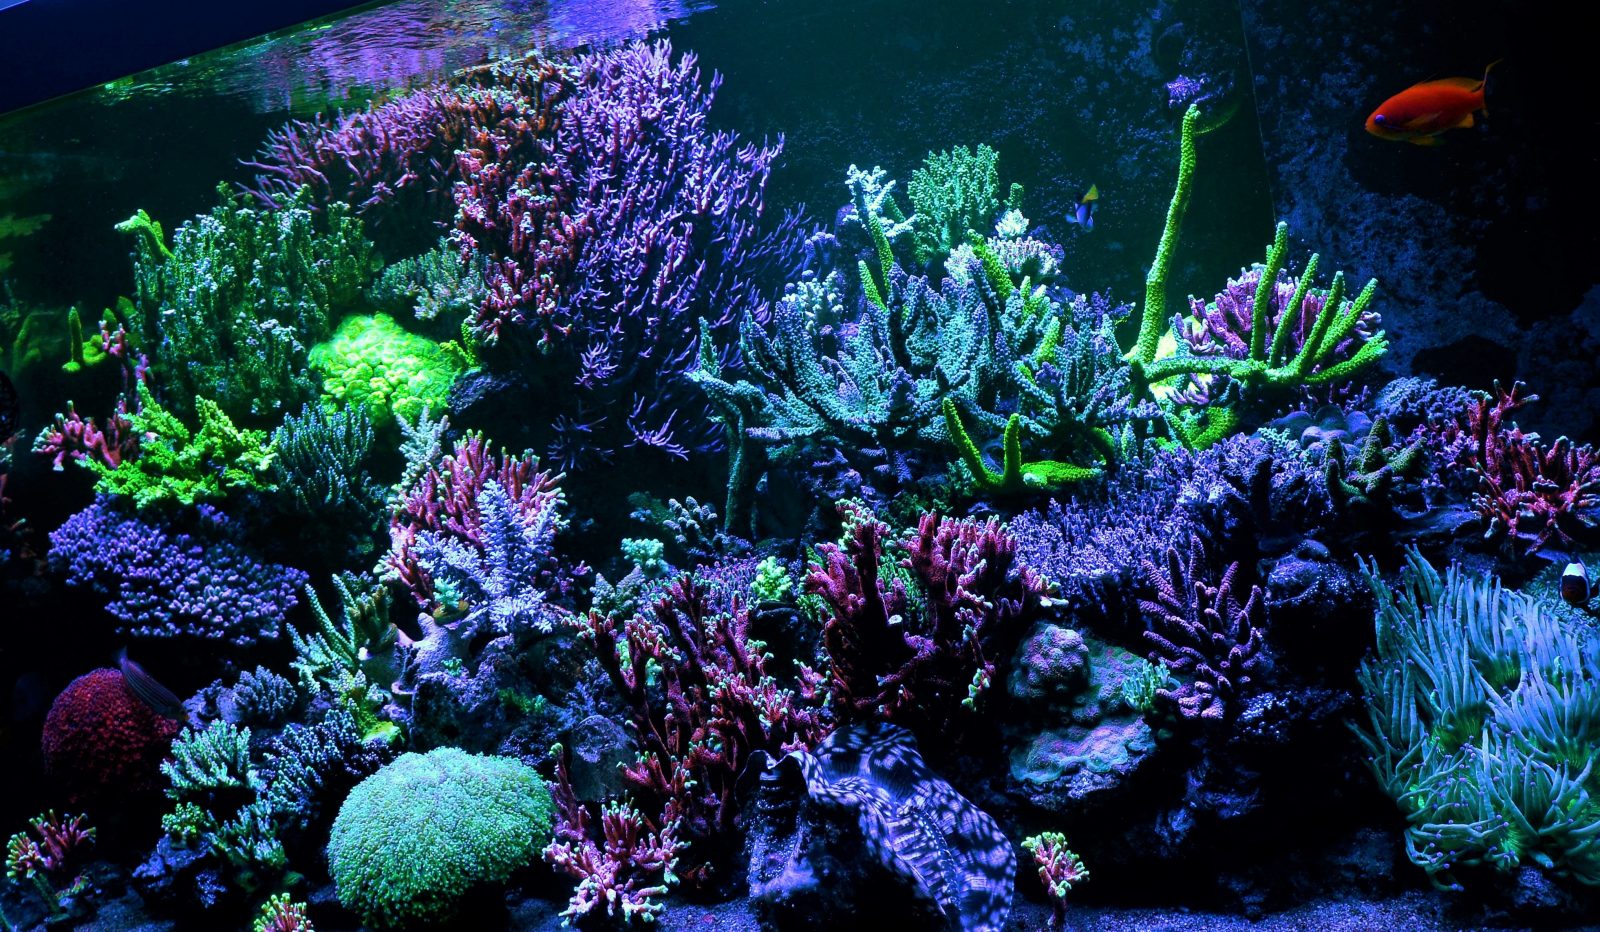 best reef aquarium led lighting 2020